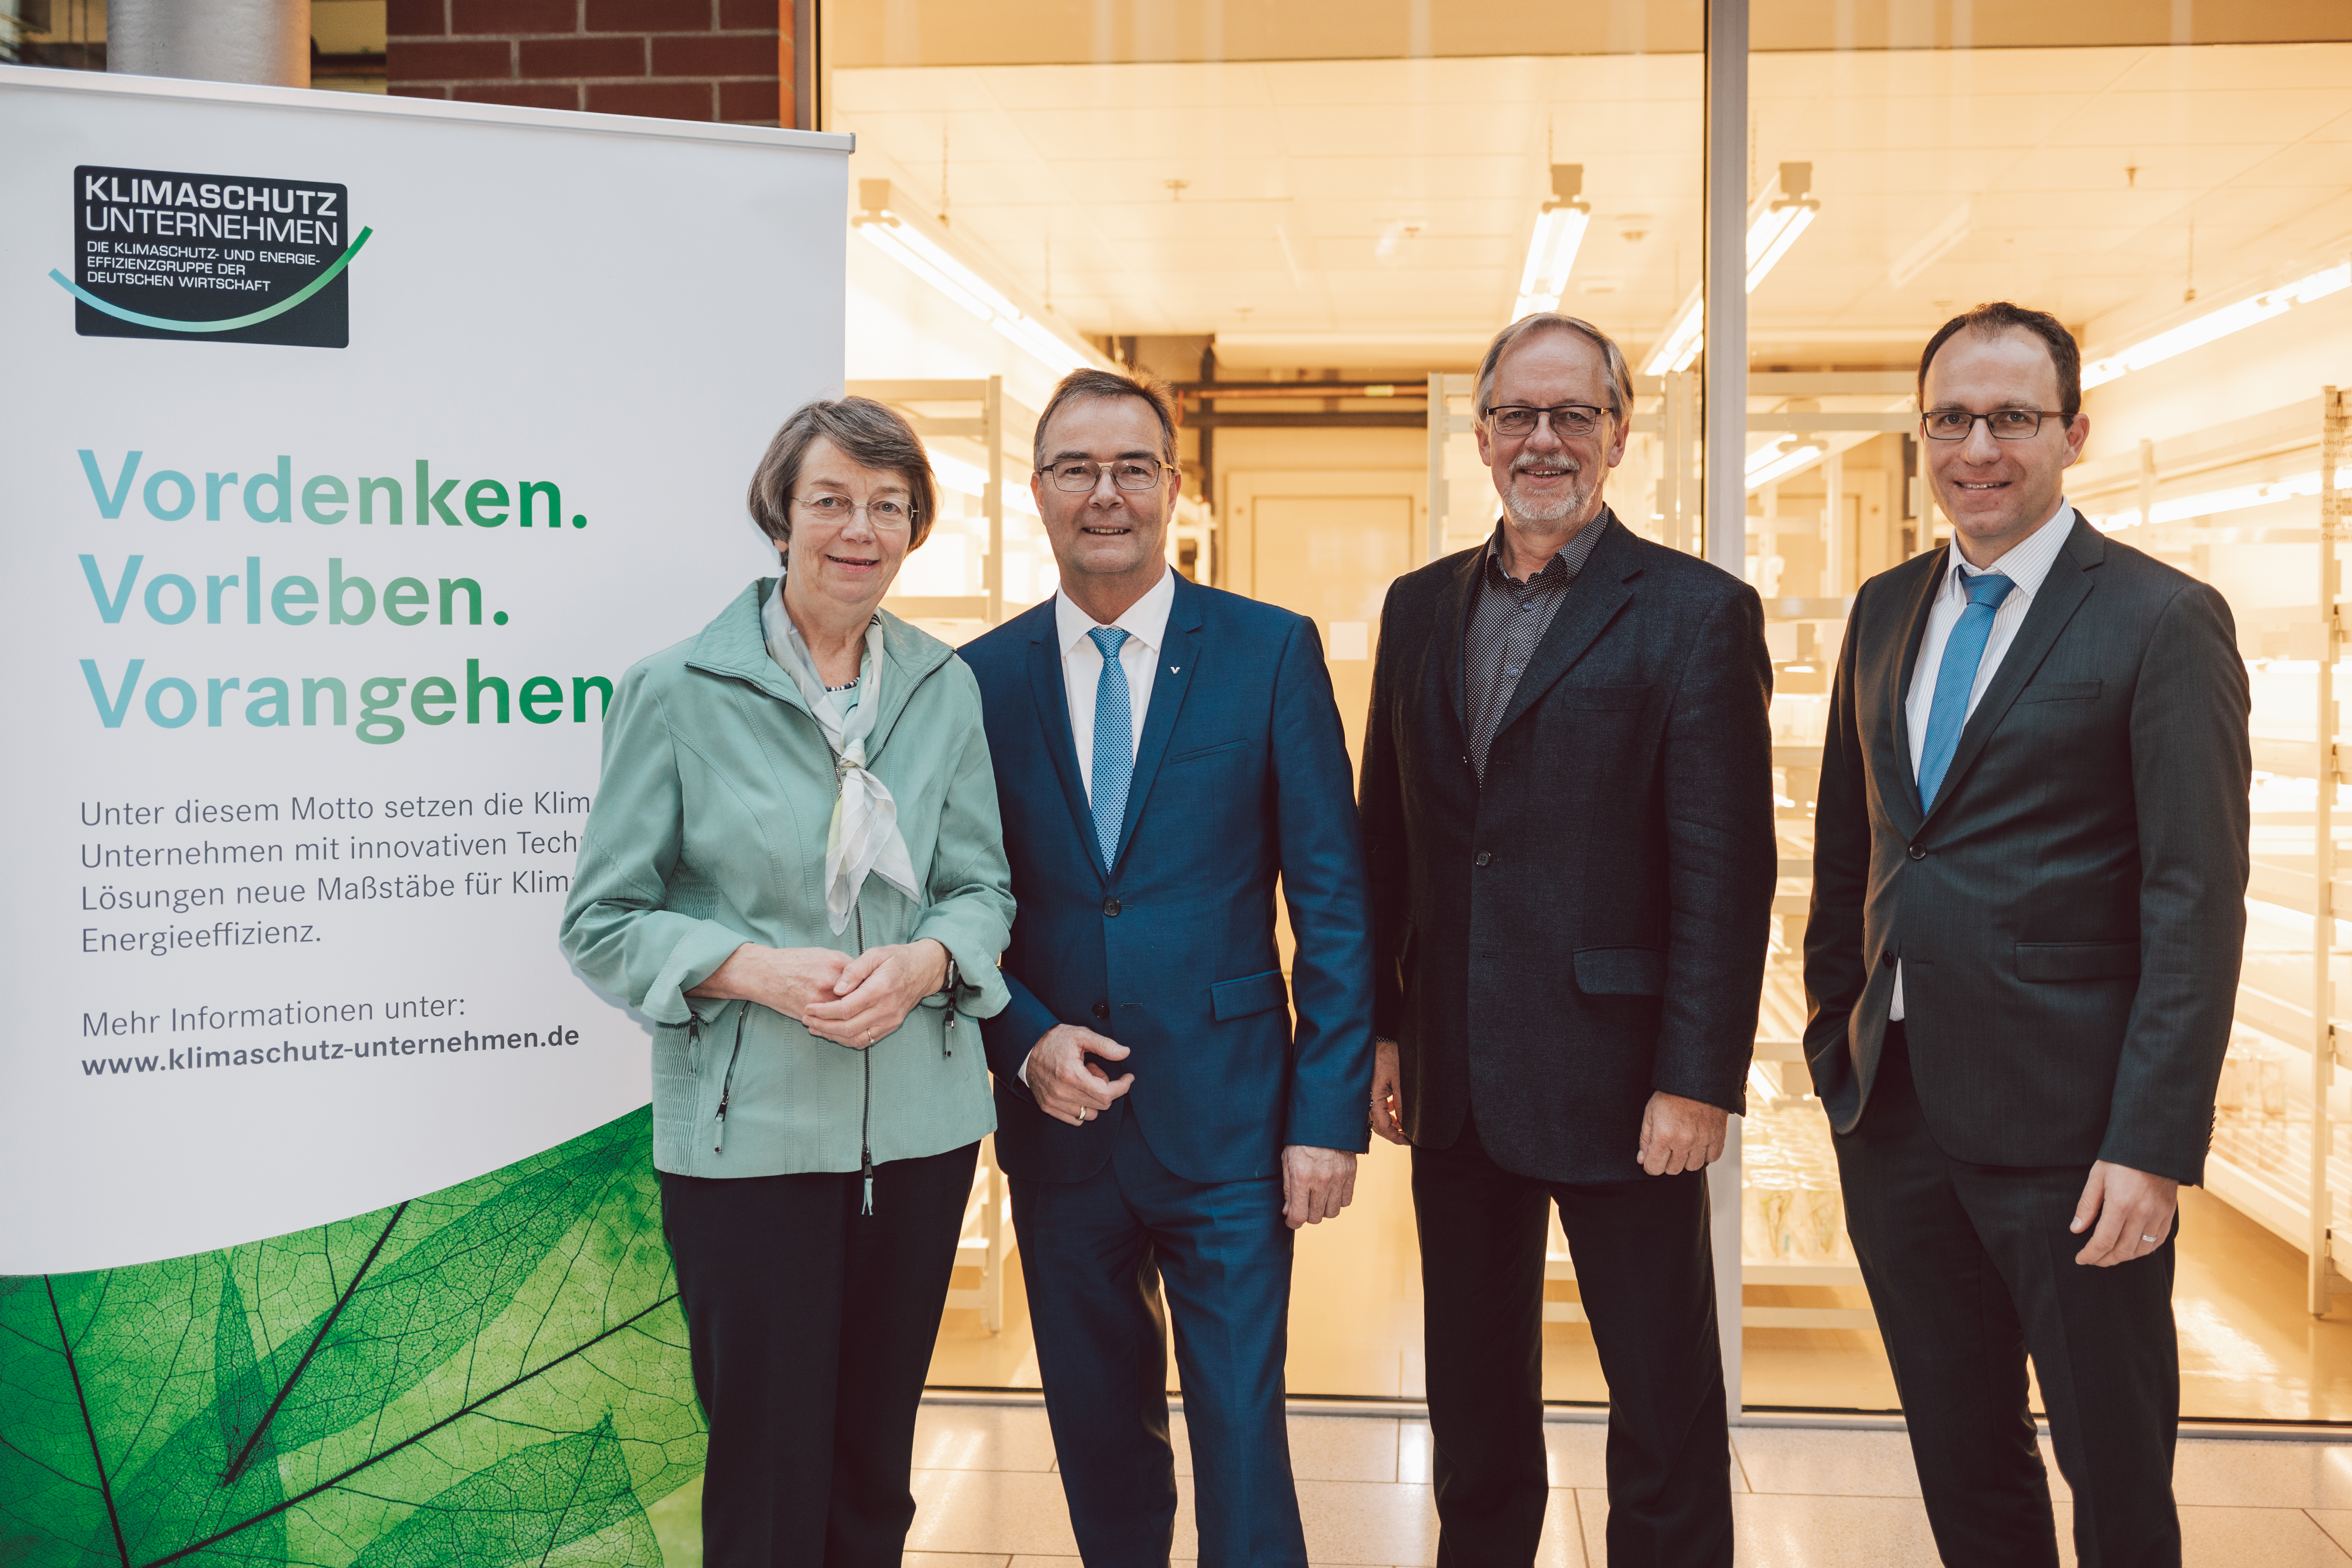 Der bisherige Vorstand (von links nach rechts) Dr. Jutta Zeddies (KWS), Jörg Schmidt (Viessmann Werke), Jan Eschke (Worlée-Chemie) sowie der Geschäftsführer des Verbandes Klimaschutz-Unternehmen Wolfgang Saam.